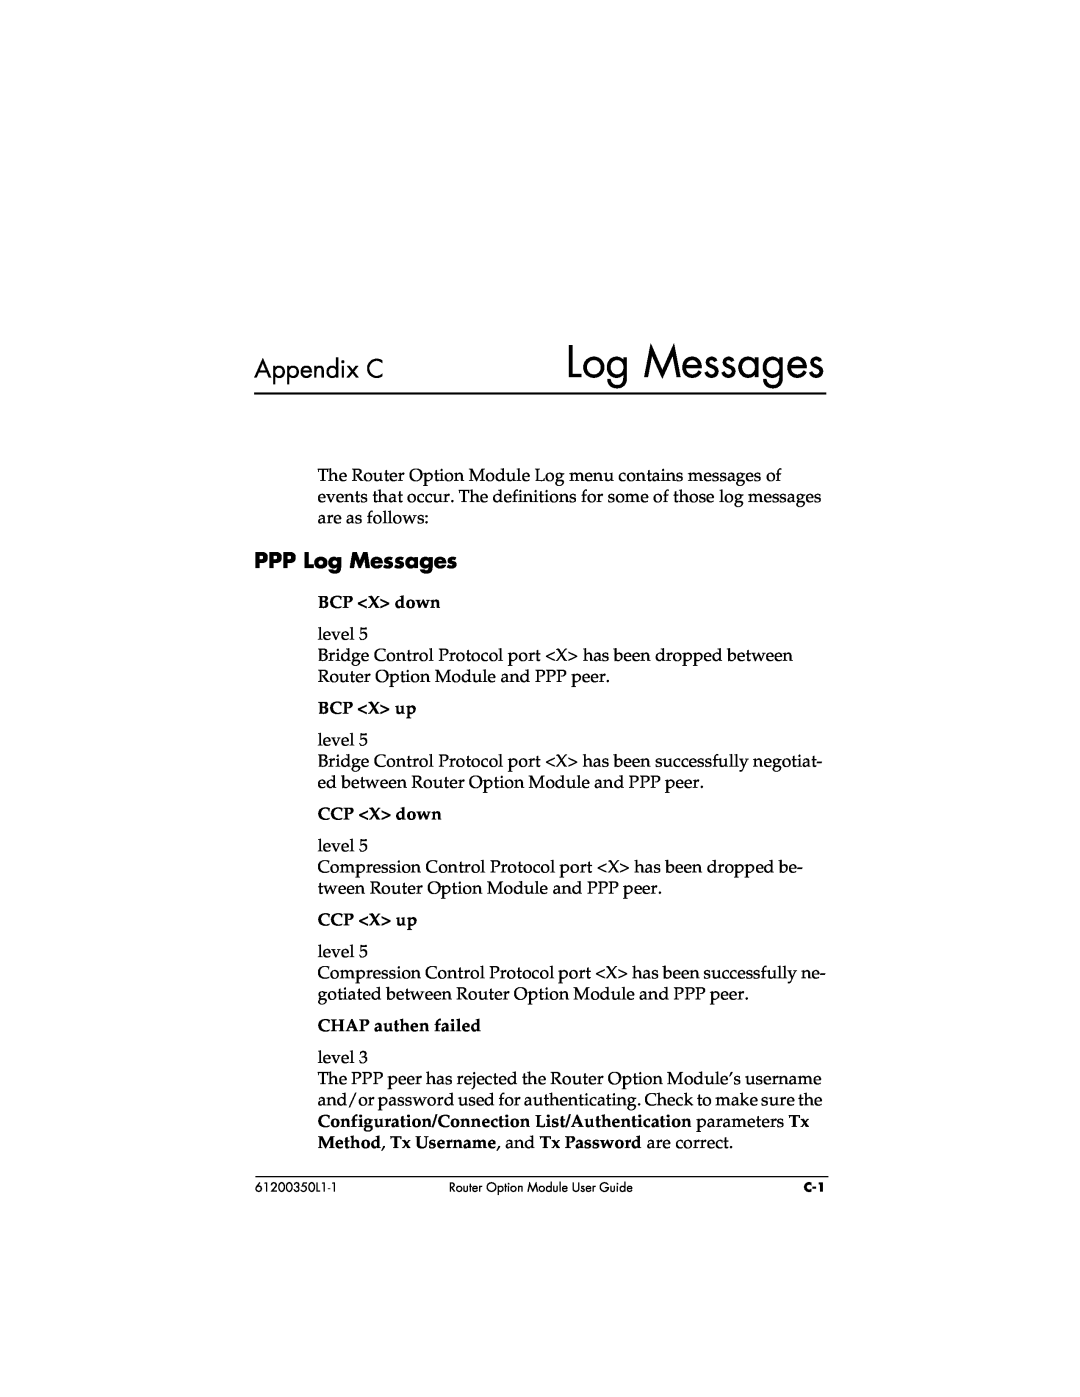 ADTRAN 1200350L1 user manual Appendix C, PPP Log Messages 